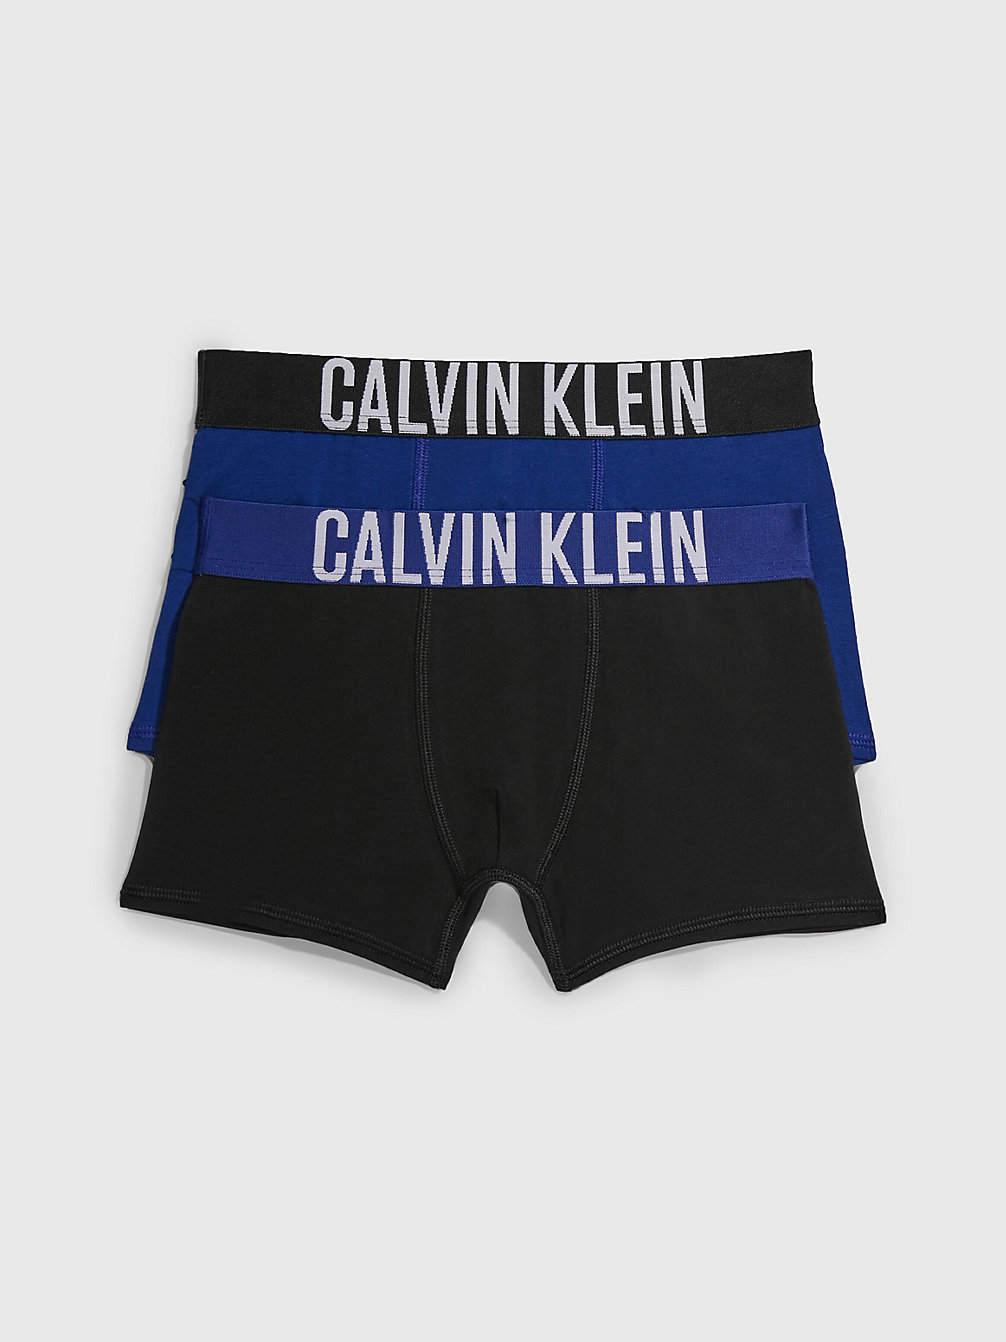 BOLDBLUE/PVHBLACK > 2er-Pack Boxershorts Für Jungen - Intense Power > undefined boys - Calvin Klein